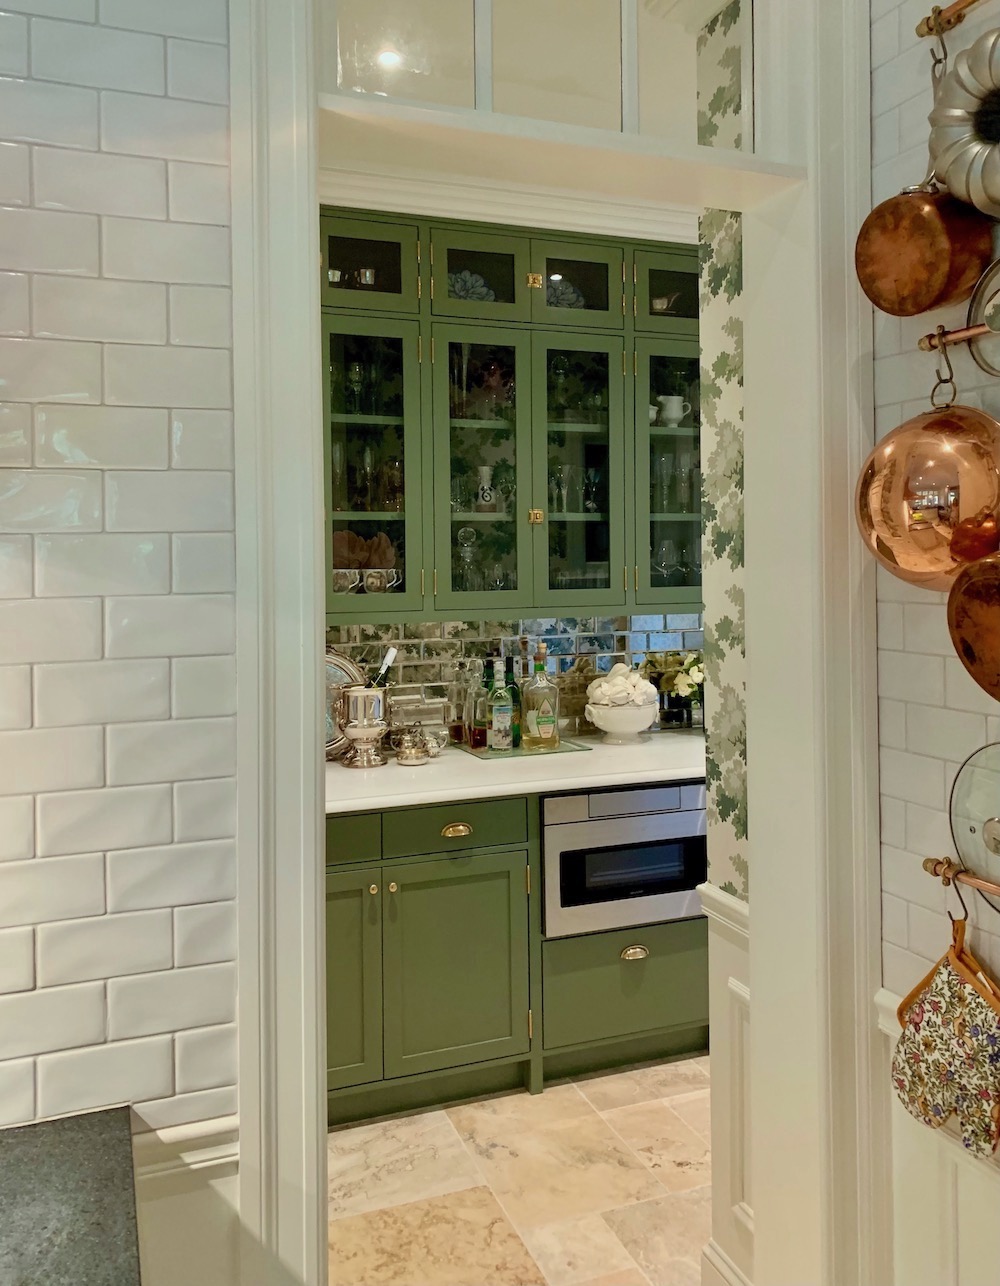 Butler's pantry - subway tile - copper pots - Farrow & Ball Calke Green cabinetry